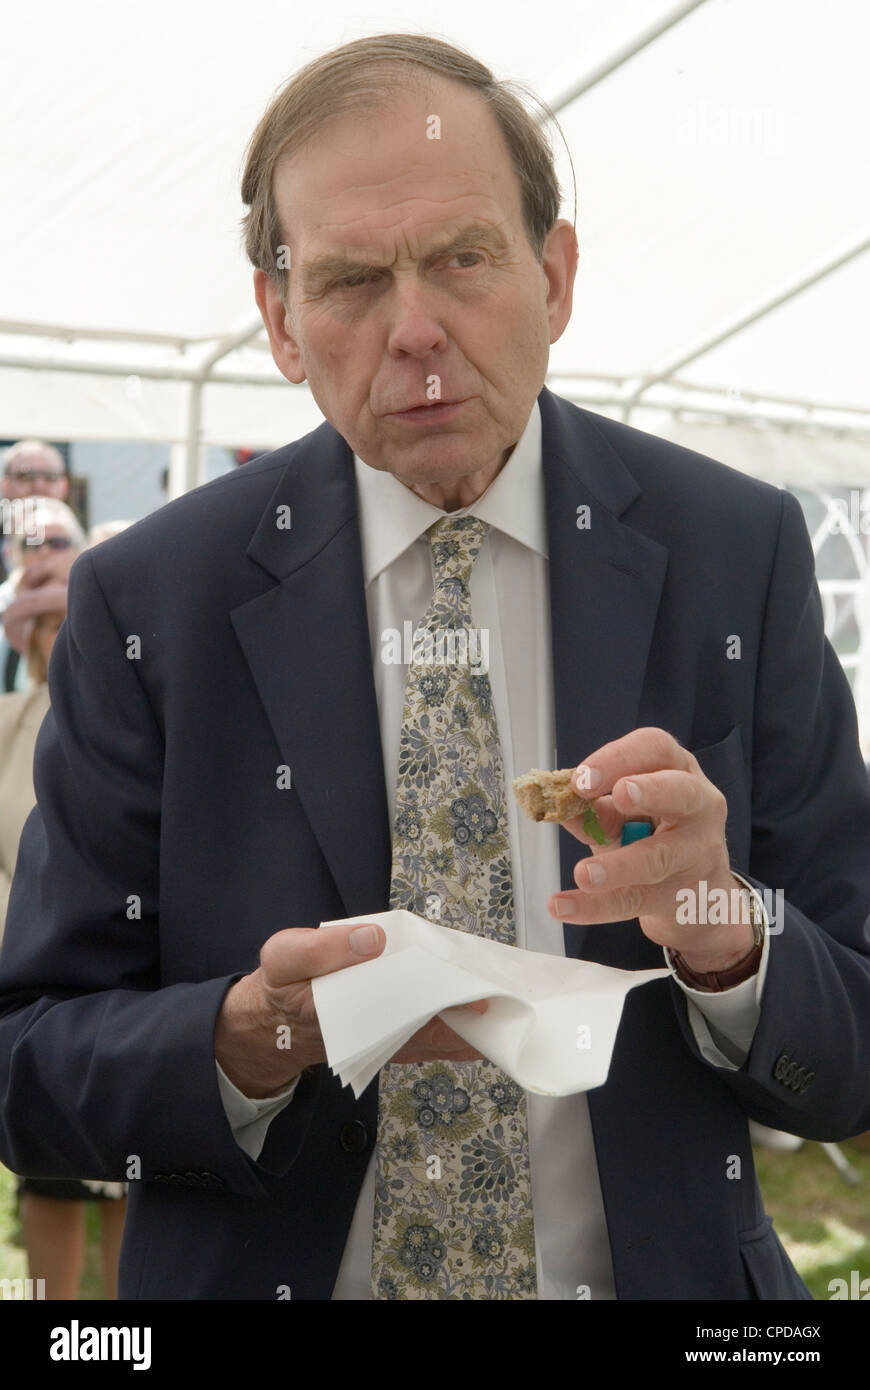 John 11th Earl of Sandwich, tasting a sandwich. Sandwich Kent UK. HOMER SYKES Stock Photo